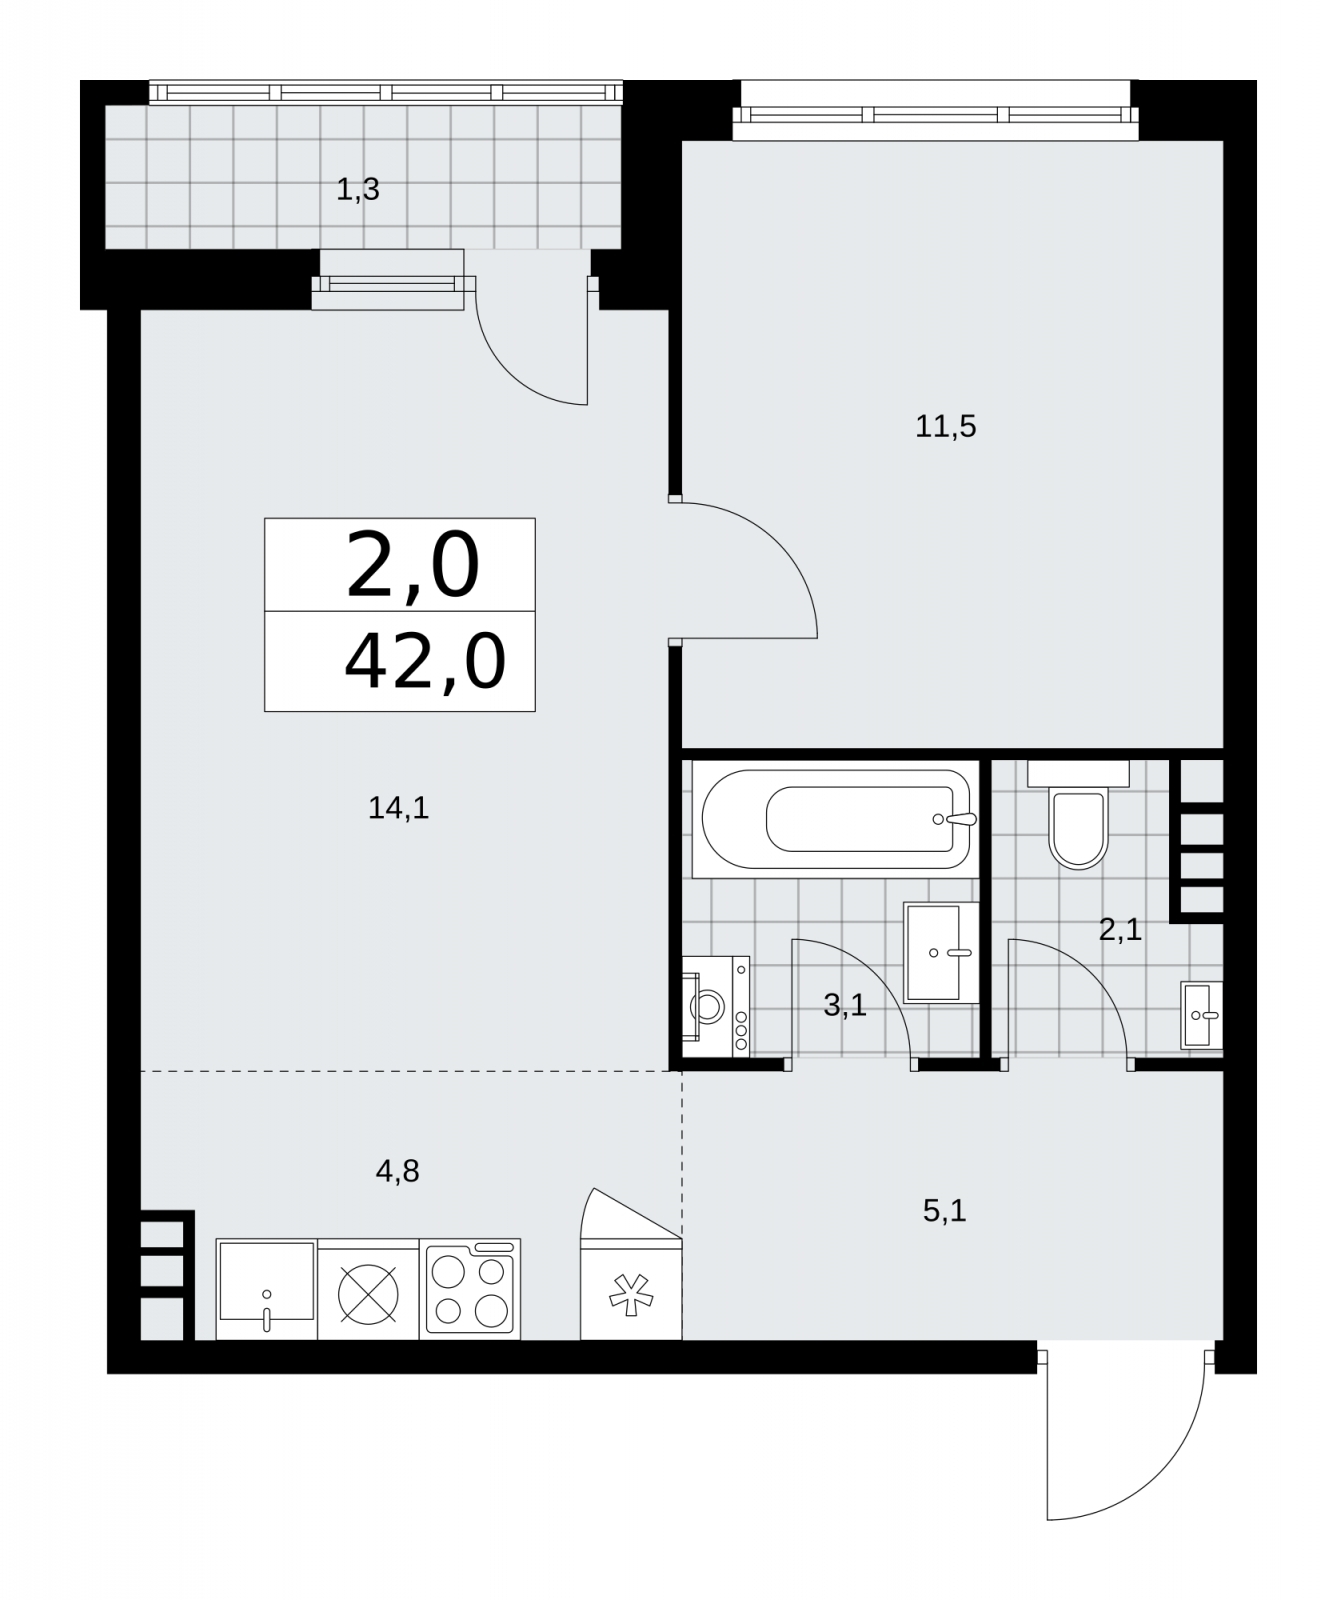 Продается двухкомнатная квартира с европланировкой с отделкой в новом ЖК, недалеко от метро